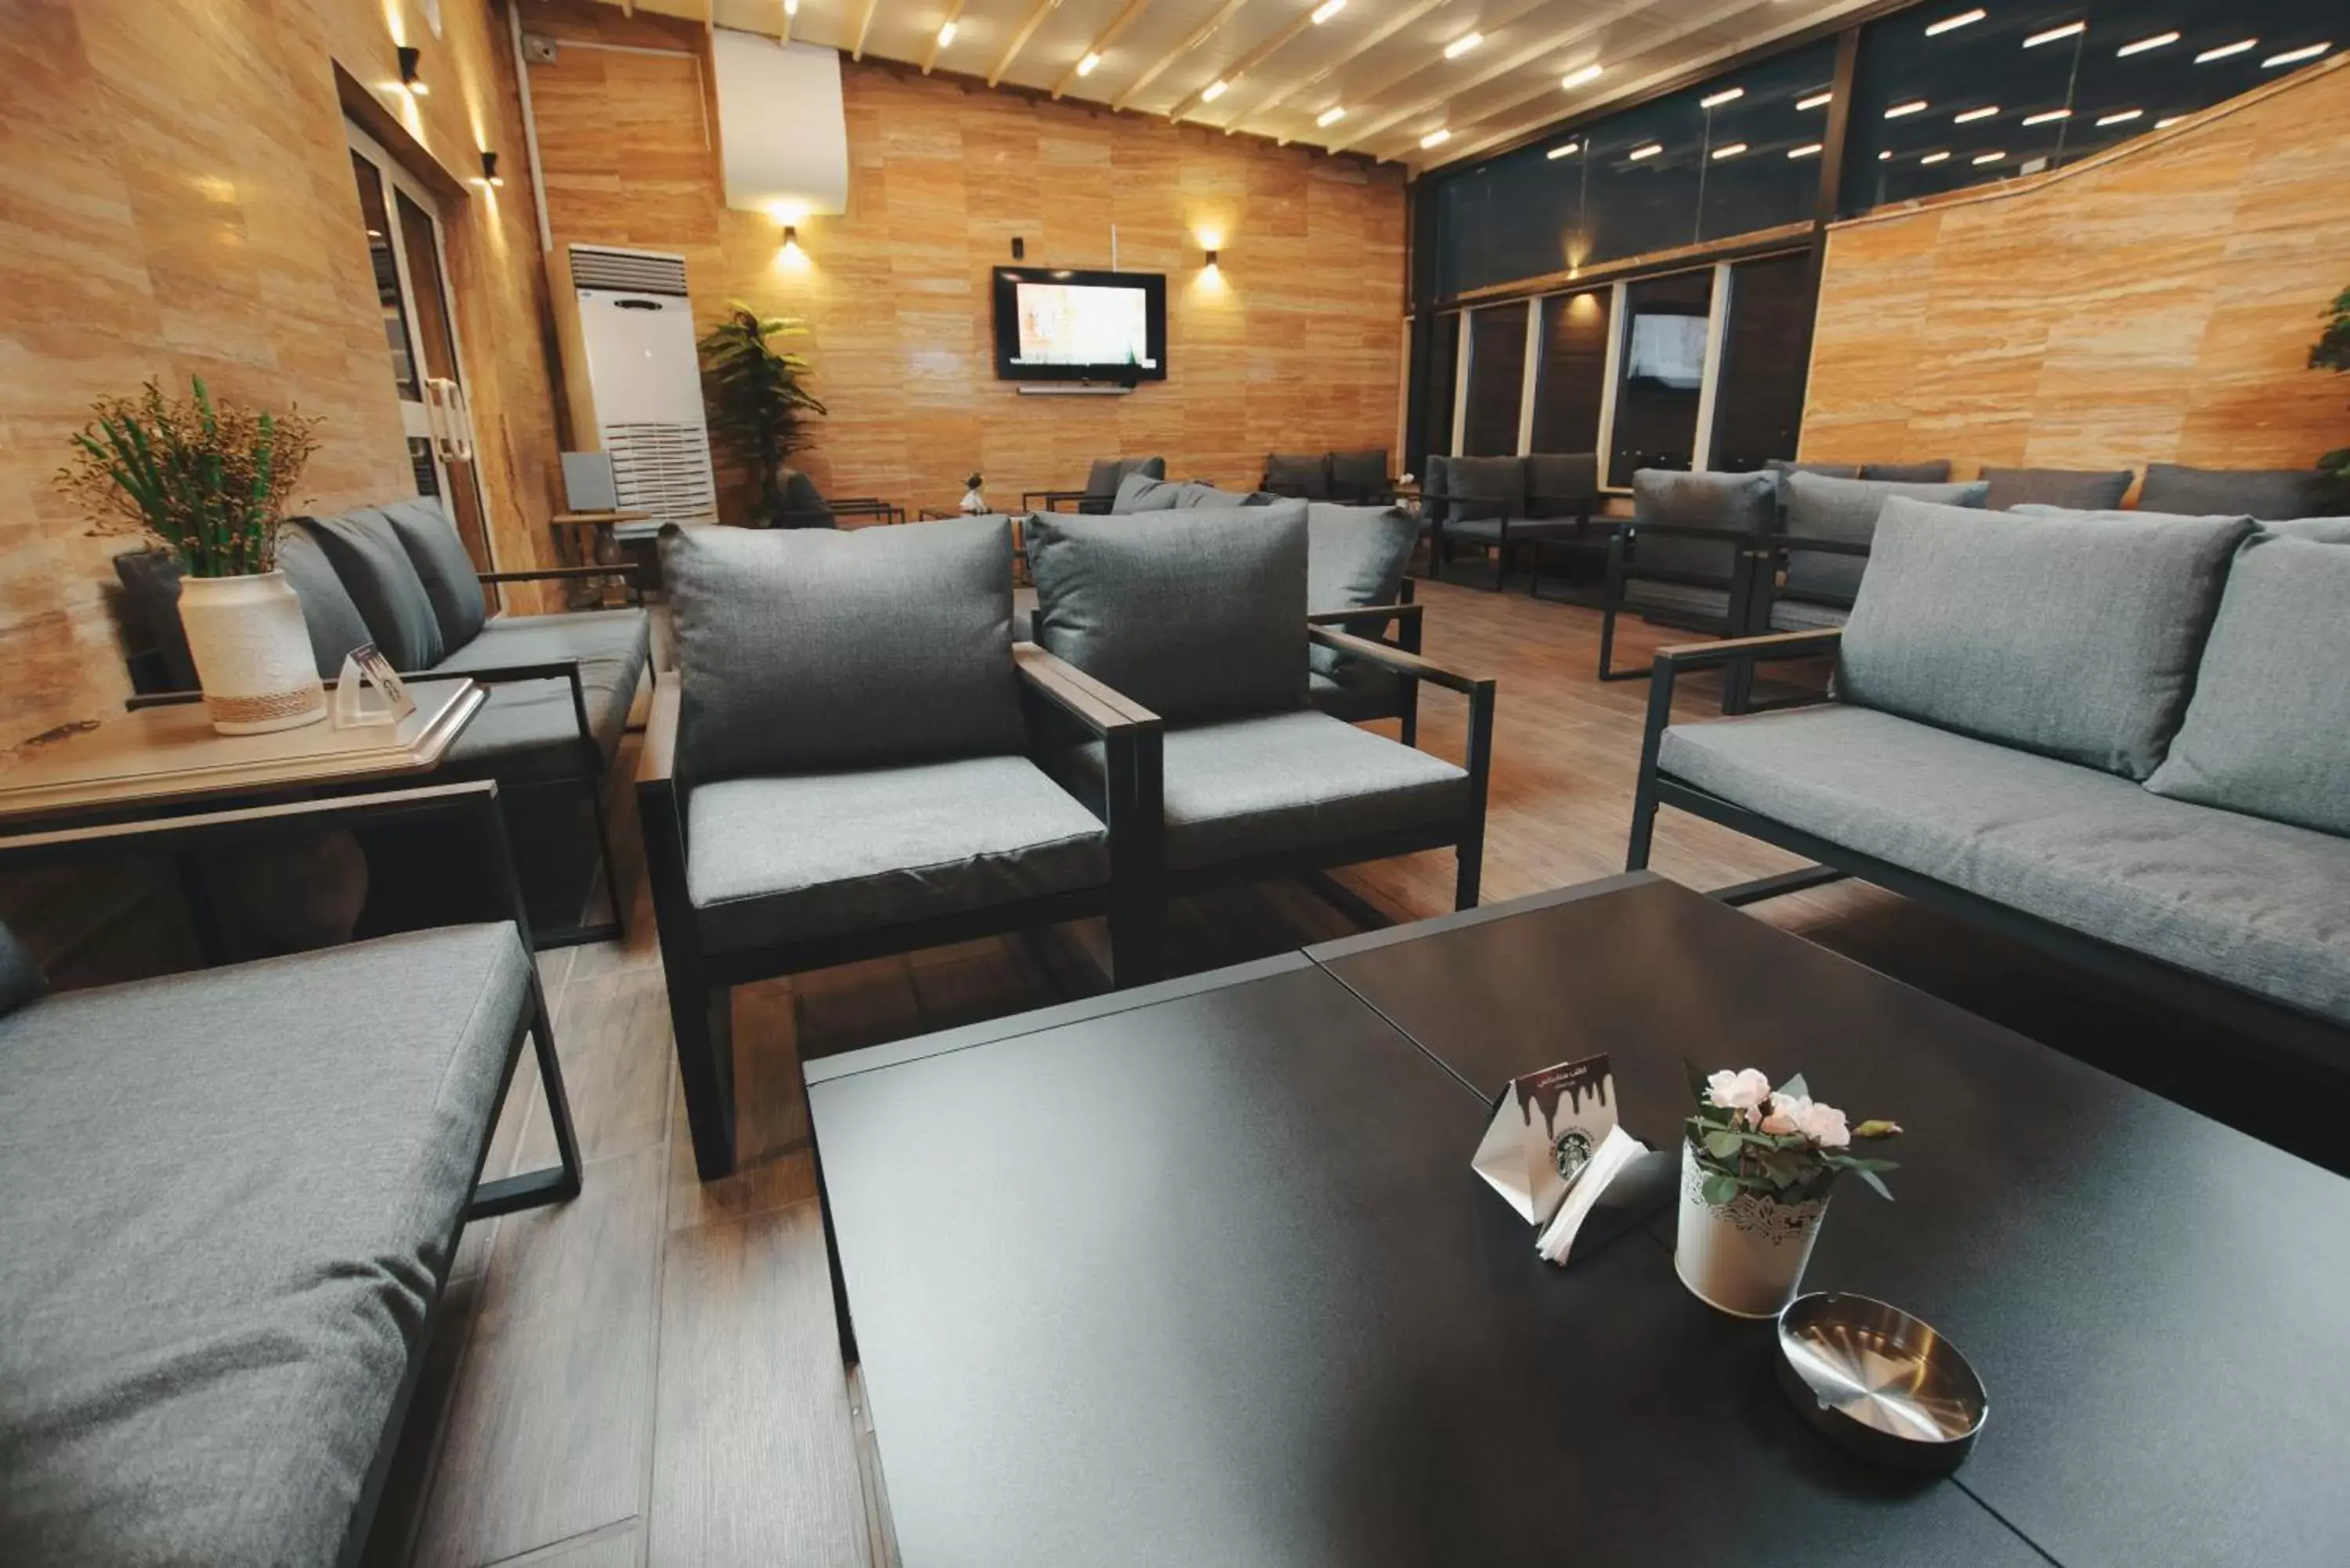 Restaurant/places to eat, Seating Area in Iridium 70 Hotel